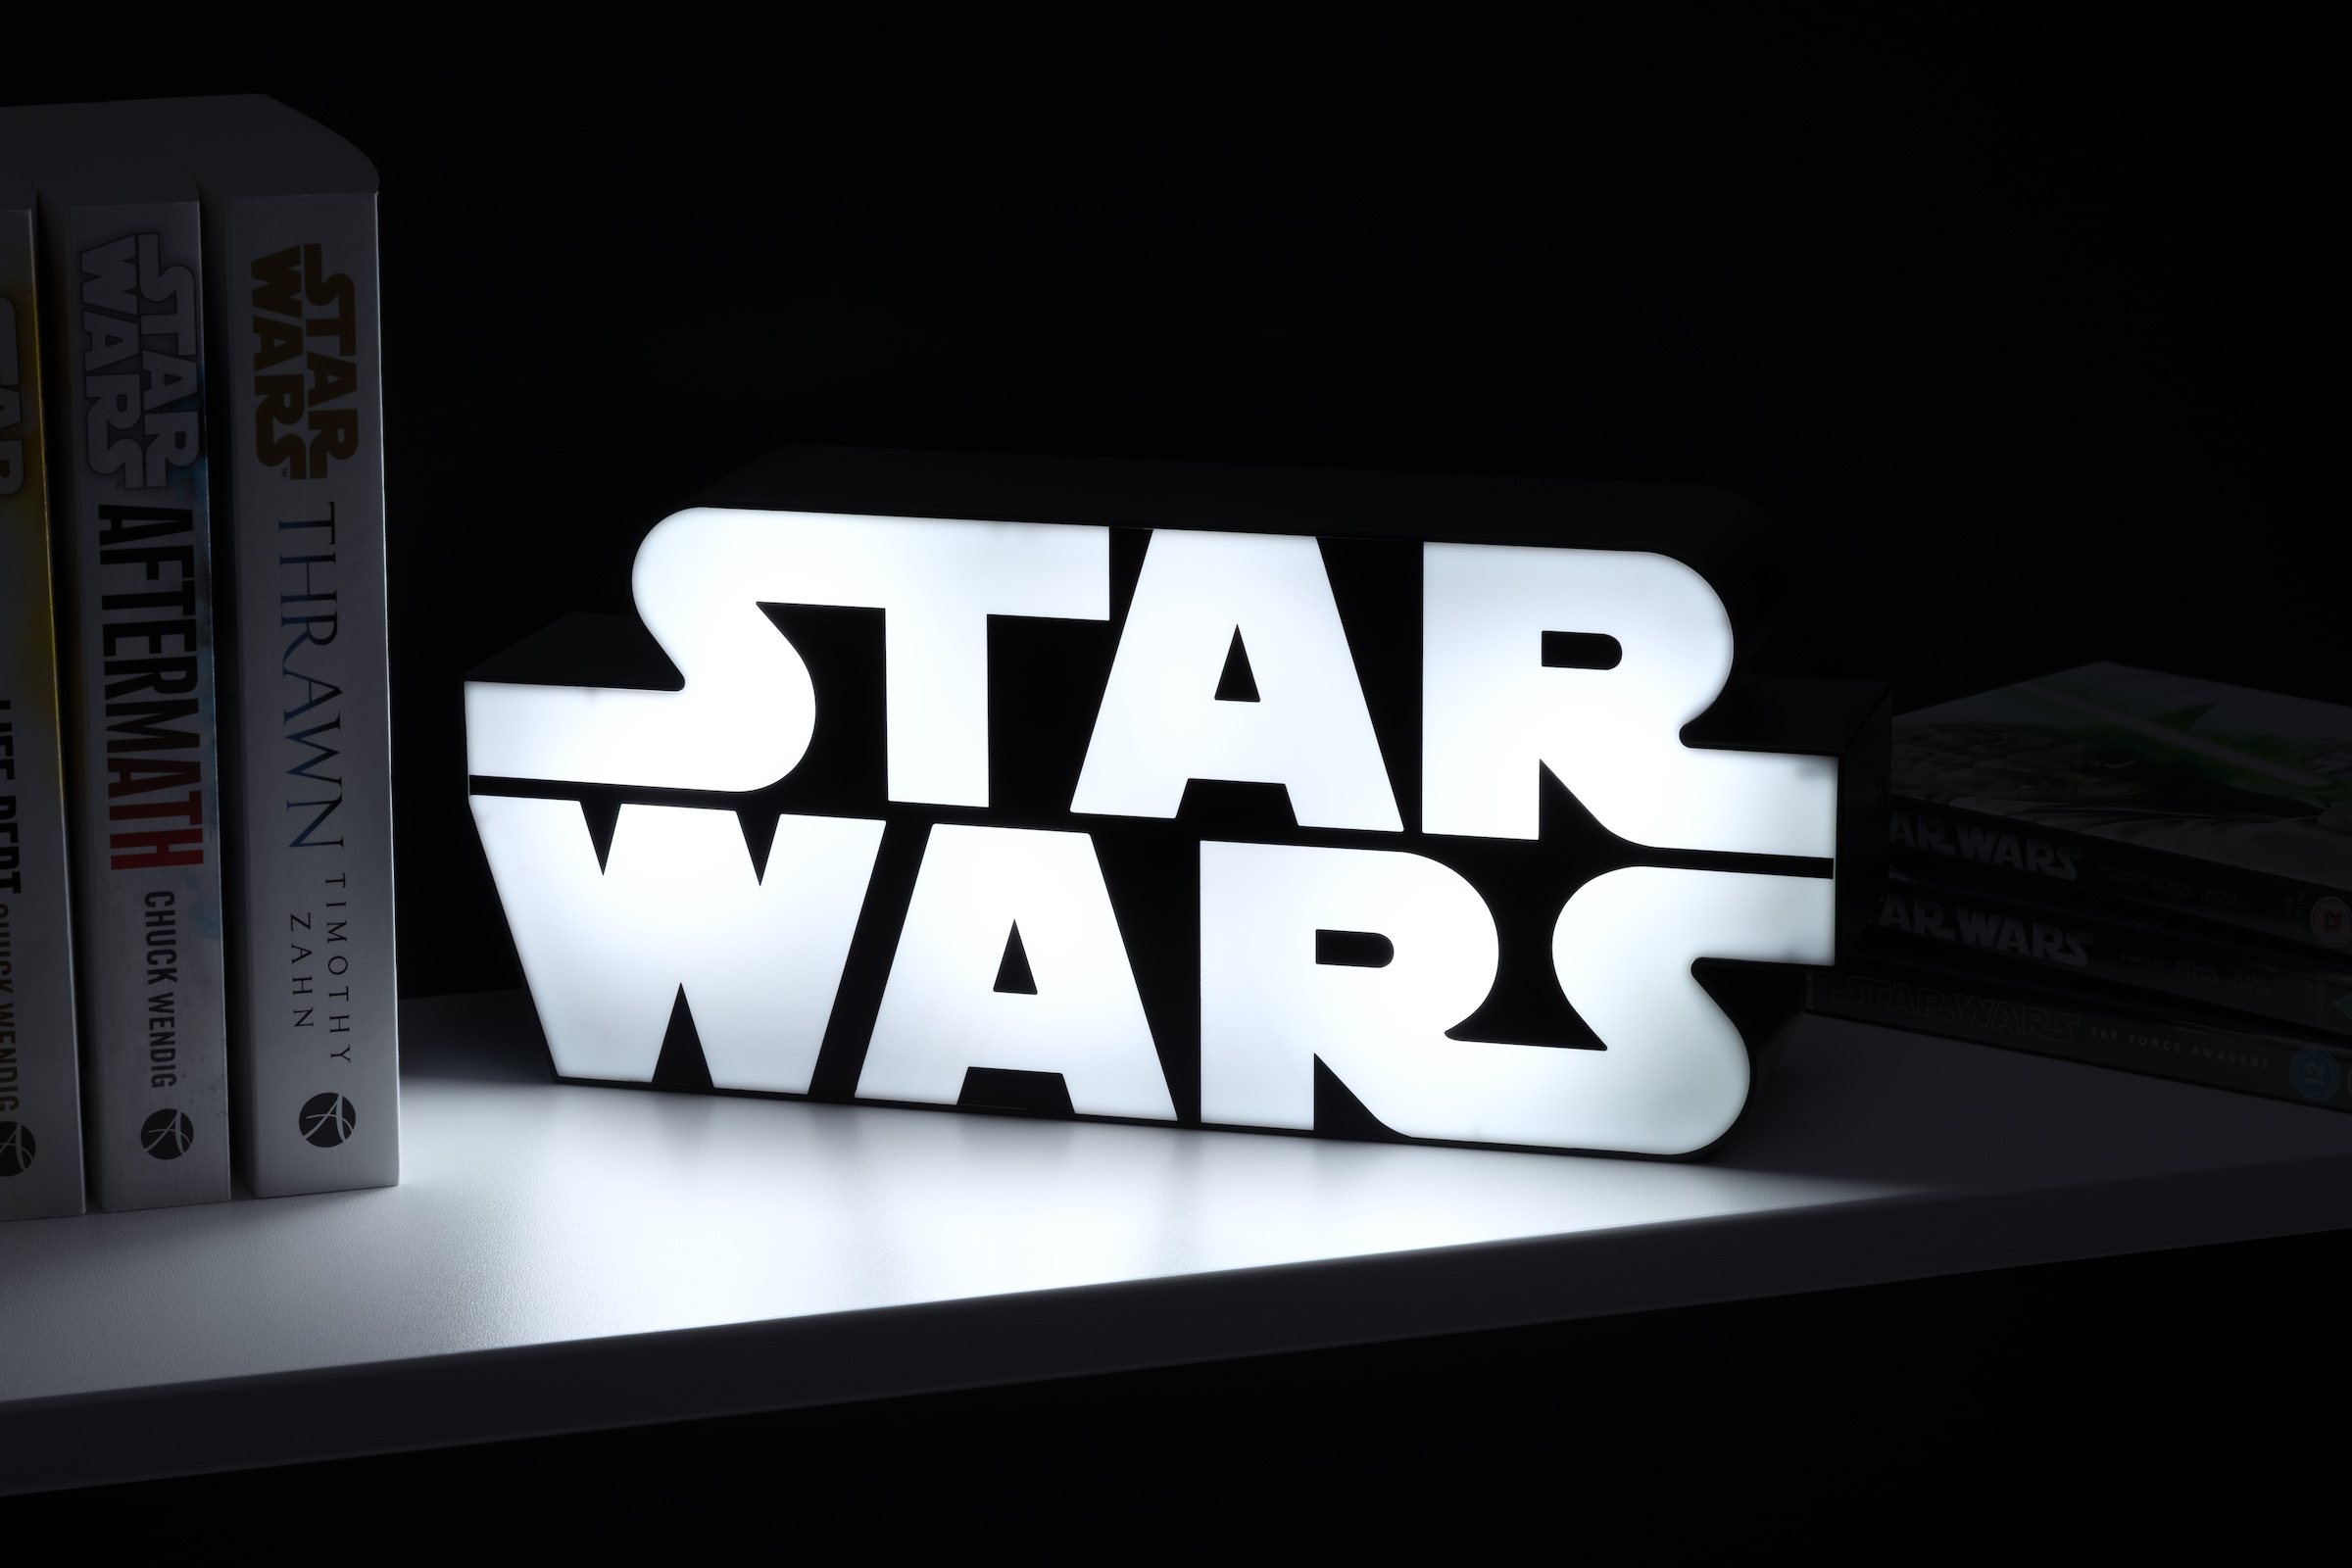 ♕ Paladone LED Dekolicht »Star Wars Logo Leuchte« versandkostenfrei auf